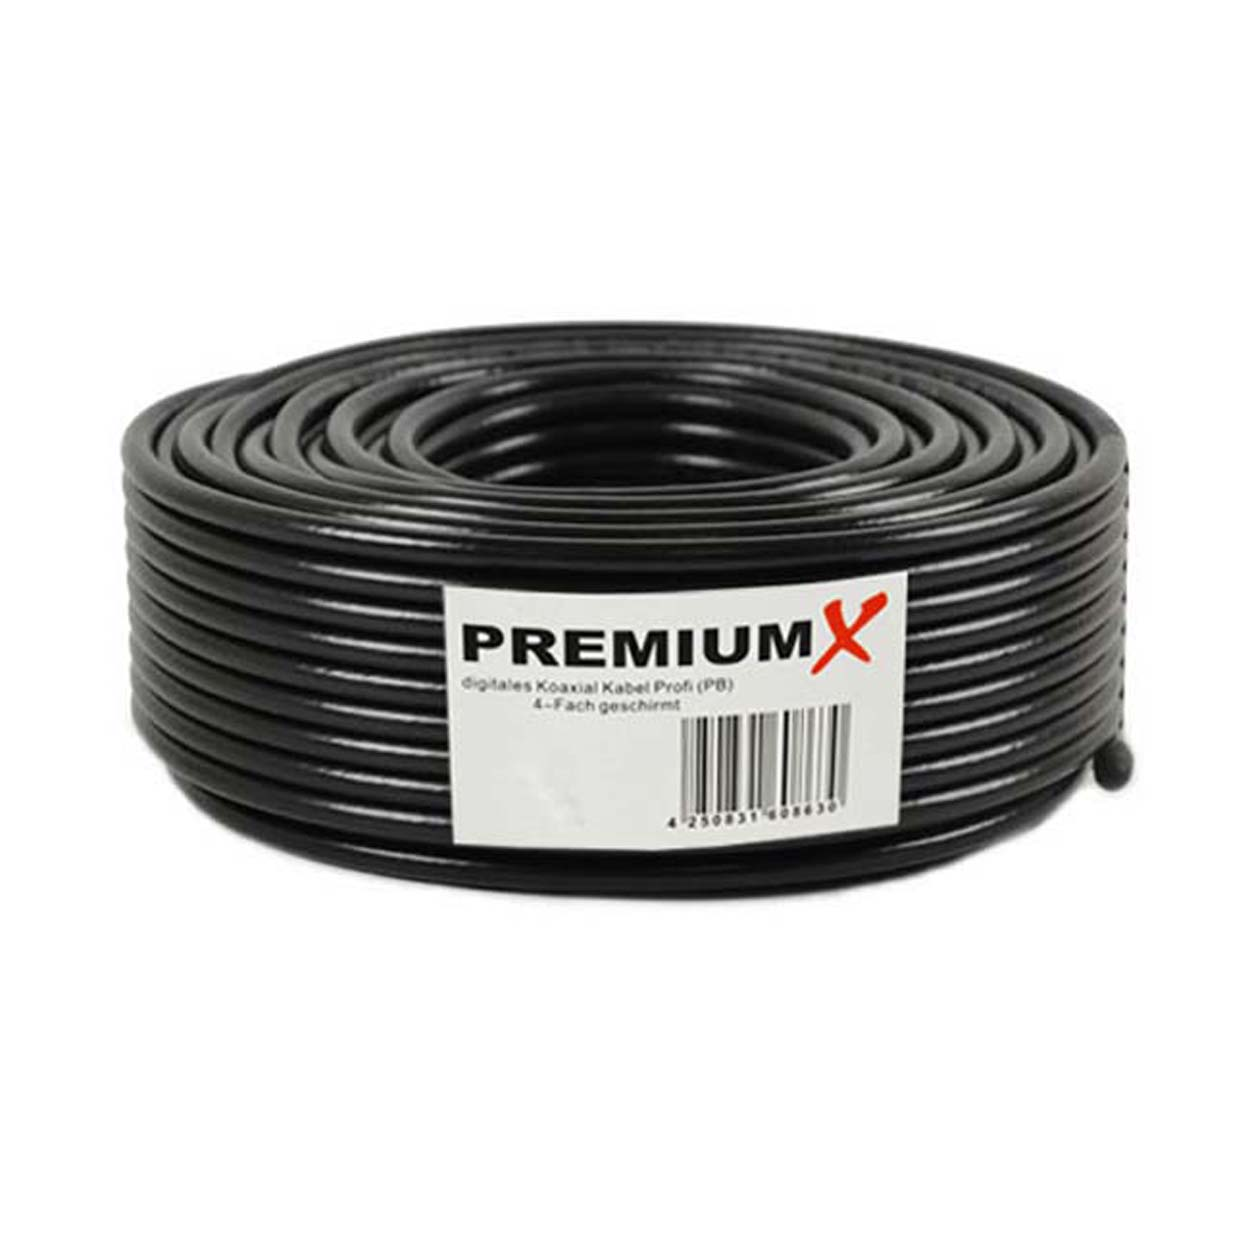 PREMIUMX 25m BASIC Koaxialkabel schwarz 10x Kabel SAT Antennenkabel F-Stecker 4-fach 135dB